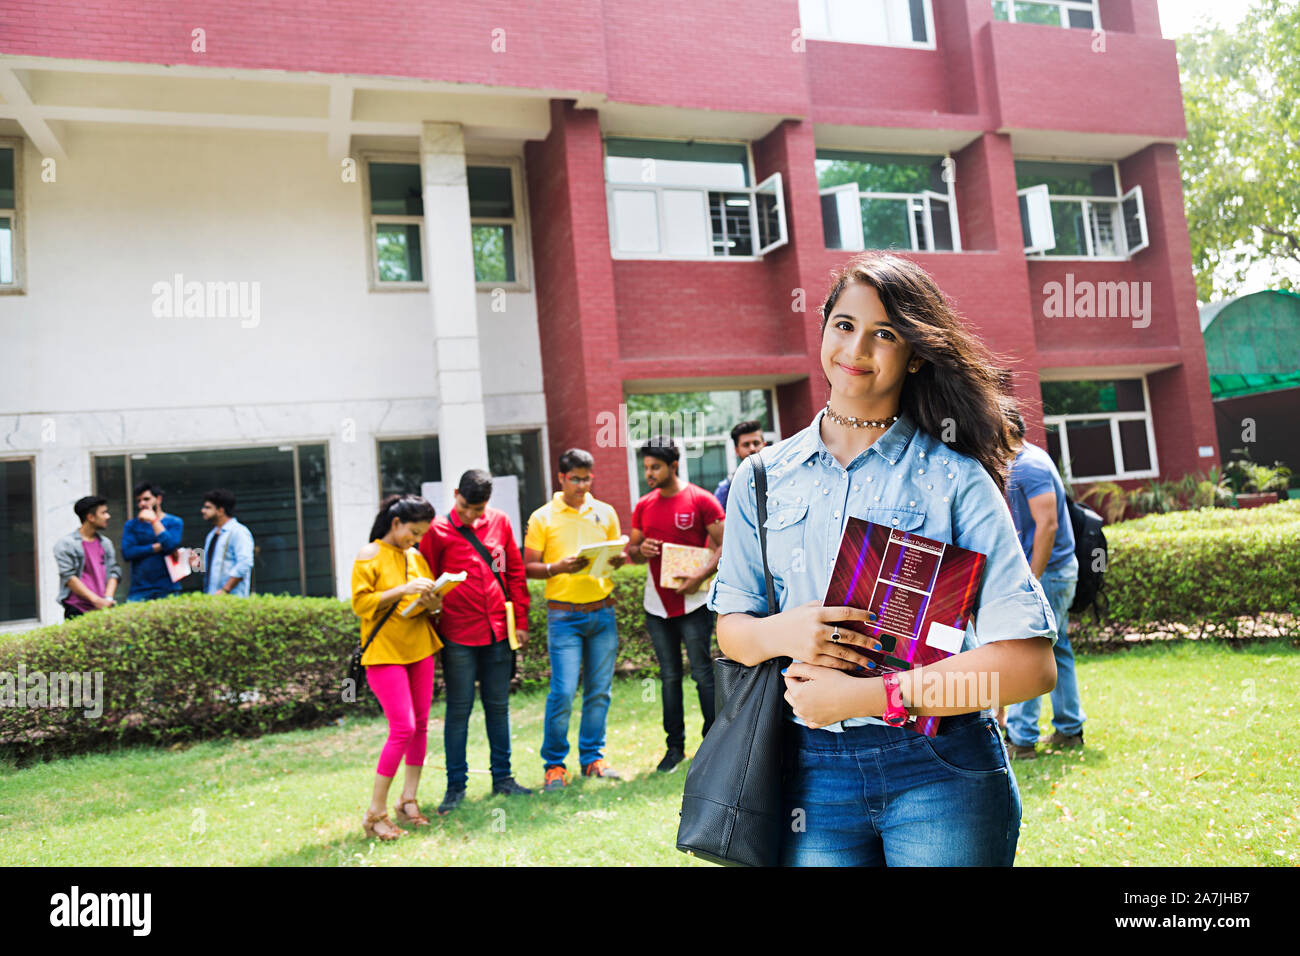 Junge Mädchen Student Holding Buch und Studenten Im-ohr-Hintergrund In-Outside Campus Gebäude Stockfoto